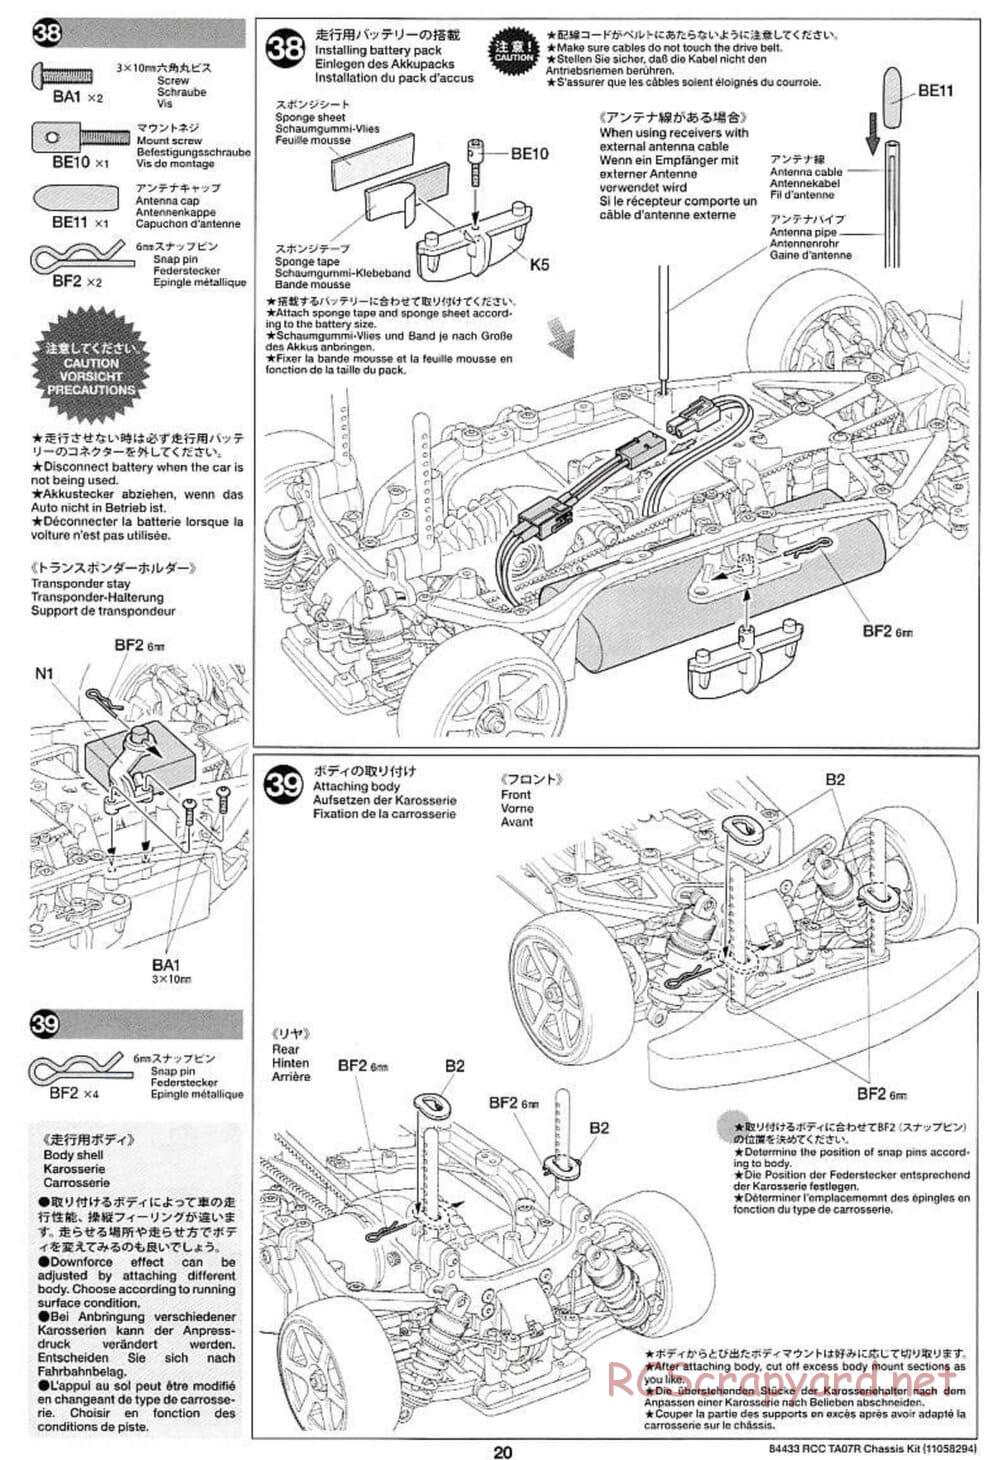 Tamiya - TA07 R Chassis - Manual - Page 20